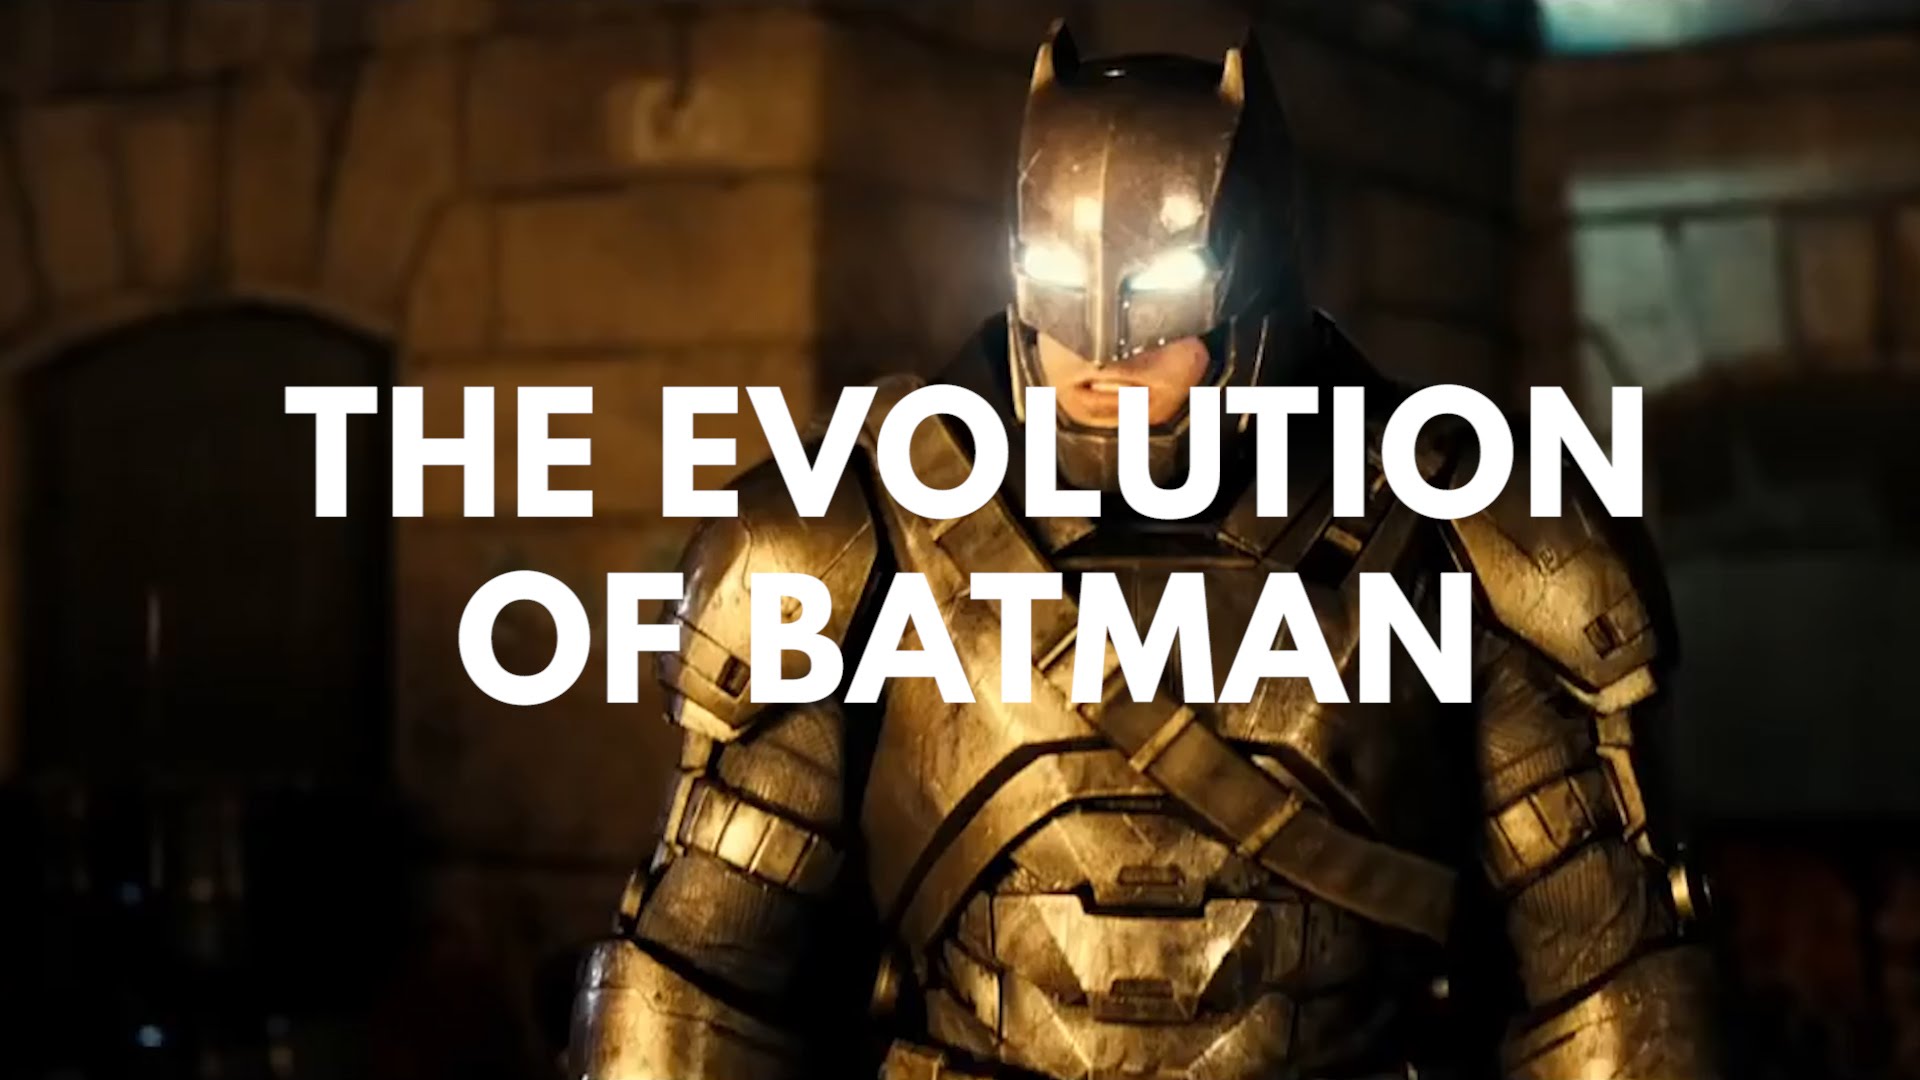 Η εξέλιξη του Batman από στον κινηματογράφο και την τηλεόραση ανά τις δεκαετίες (βίντεο)